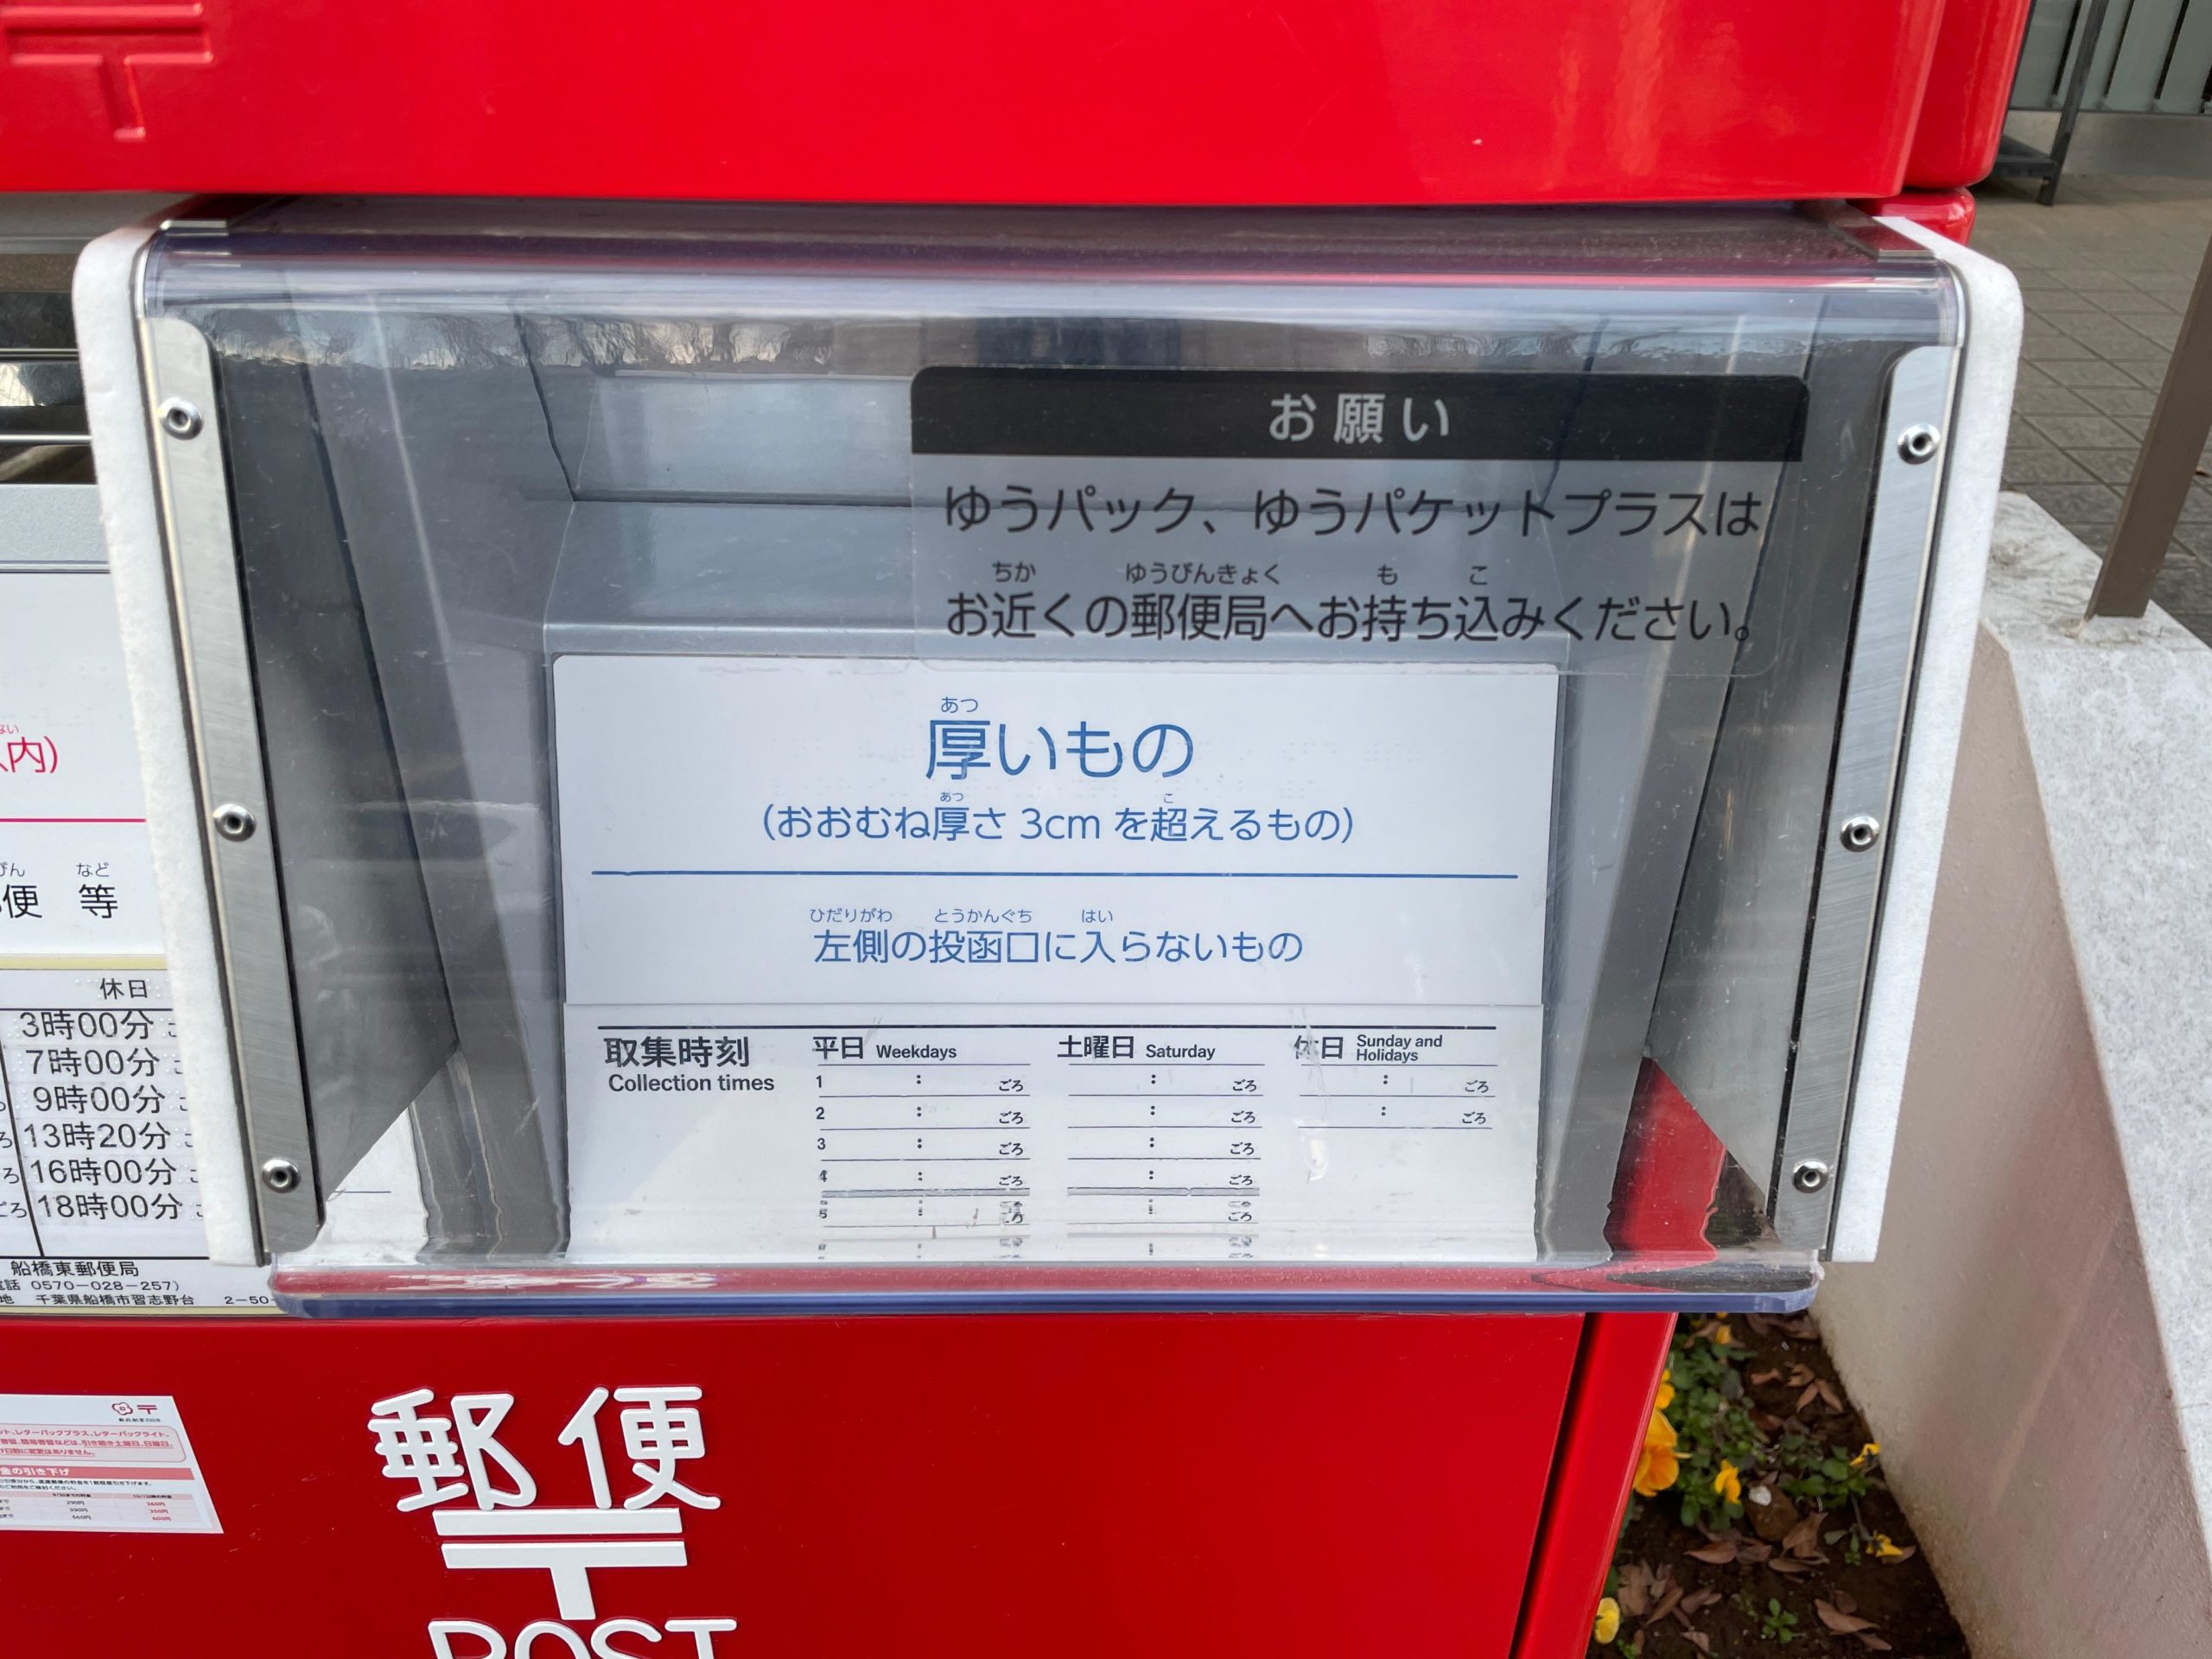 船橋東郵便局の新型7cm厚対応郵便ポスト(7cm厚対応投函口アップ)